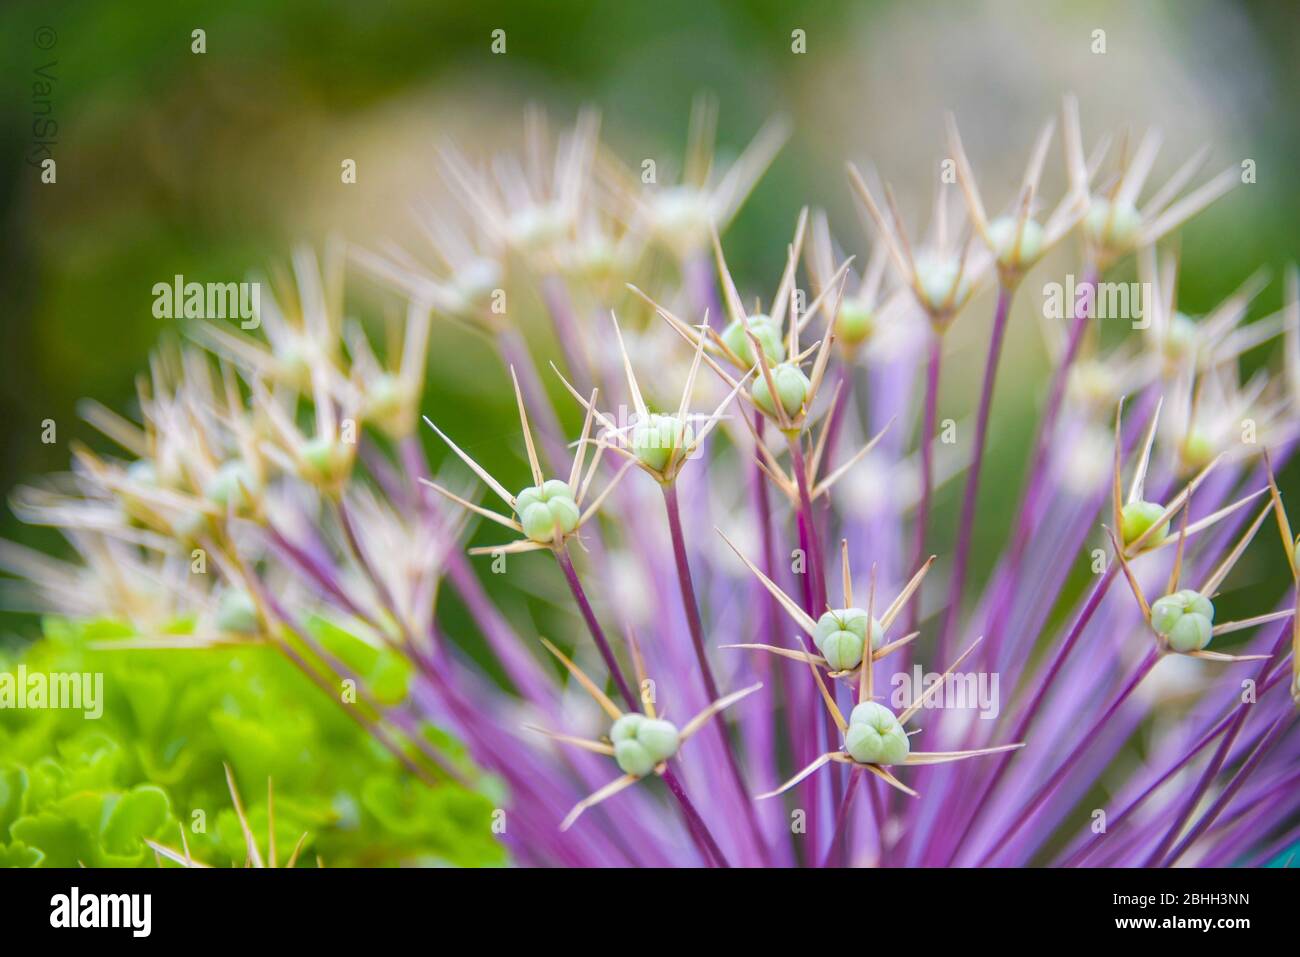 Immagine di primo piano di un bel fiore viola conosciuto come Allium Obliquum in fiore Foto Stock